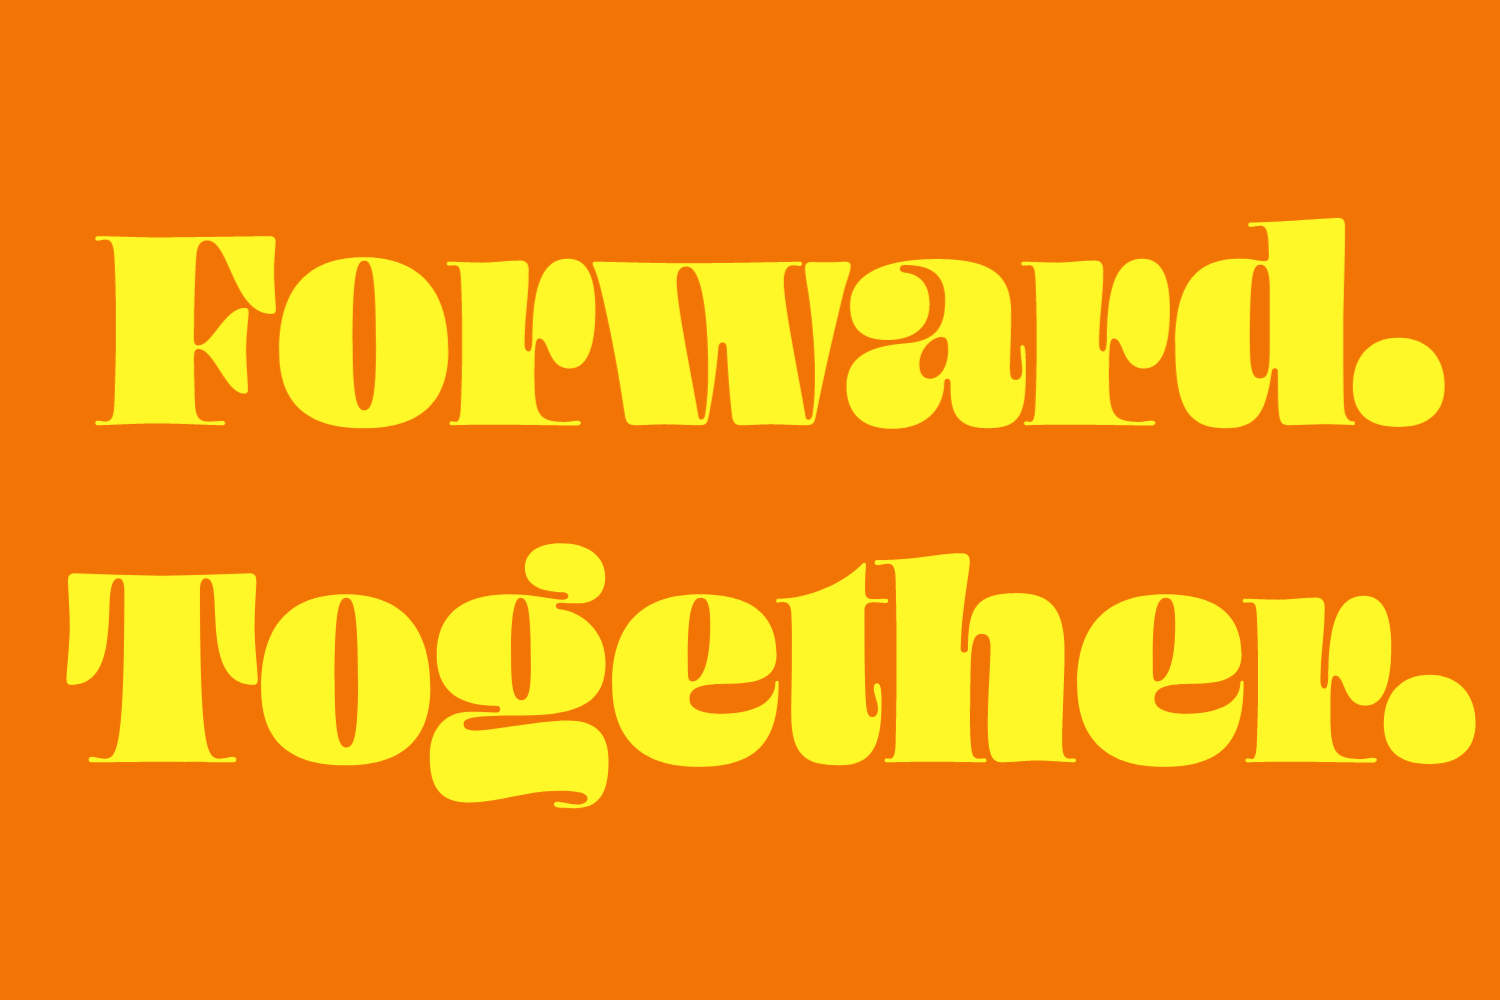 Forward. Together. 